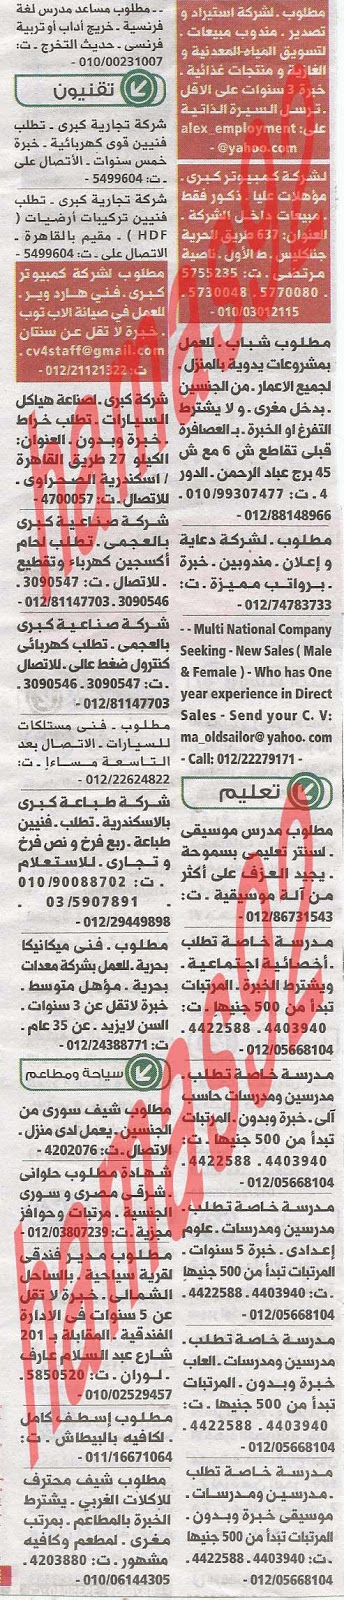 وظائف خالية فى جريدة الوسيط الاسكندرية الاثنين 22-07-2013 %D9%88+%D8%B3+%D8%B3+7